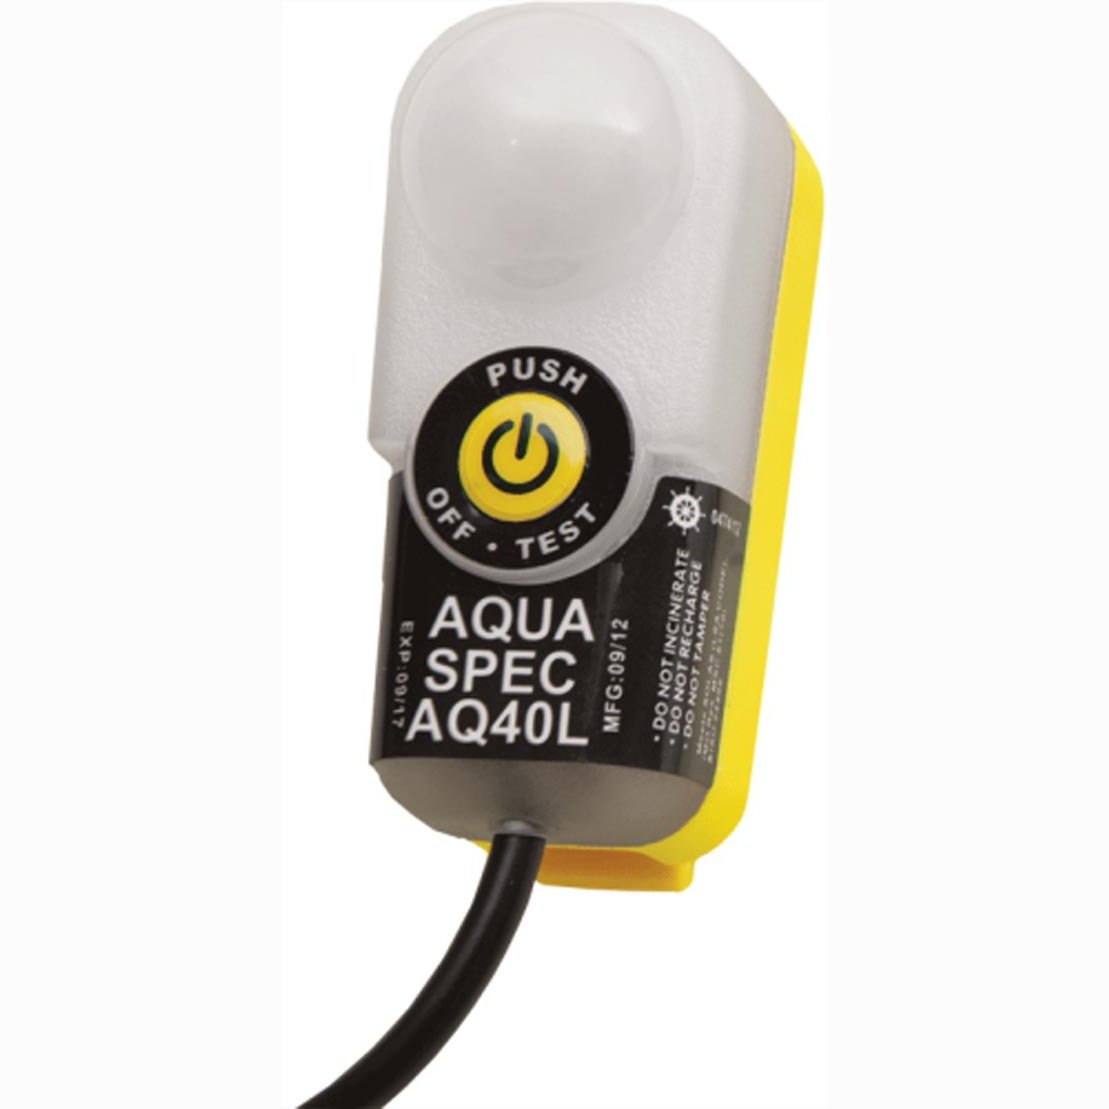 Aqua Spec AQ40L High Performance LED Lifejacket Light